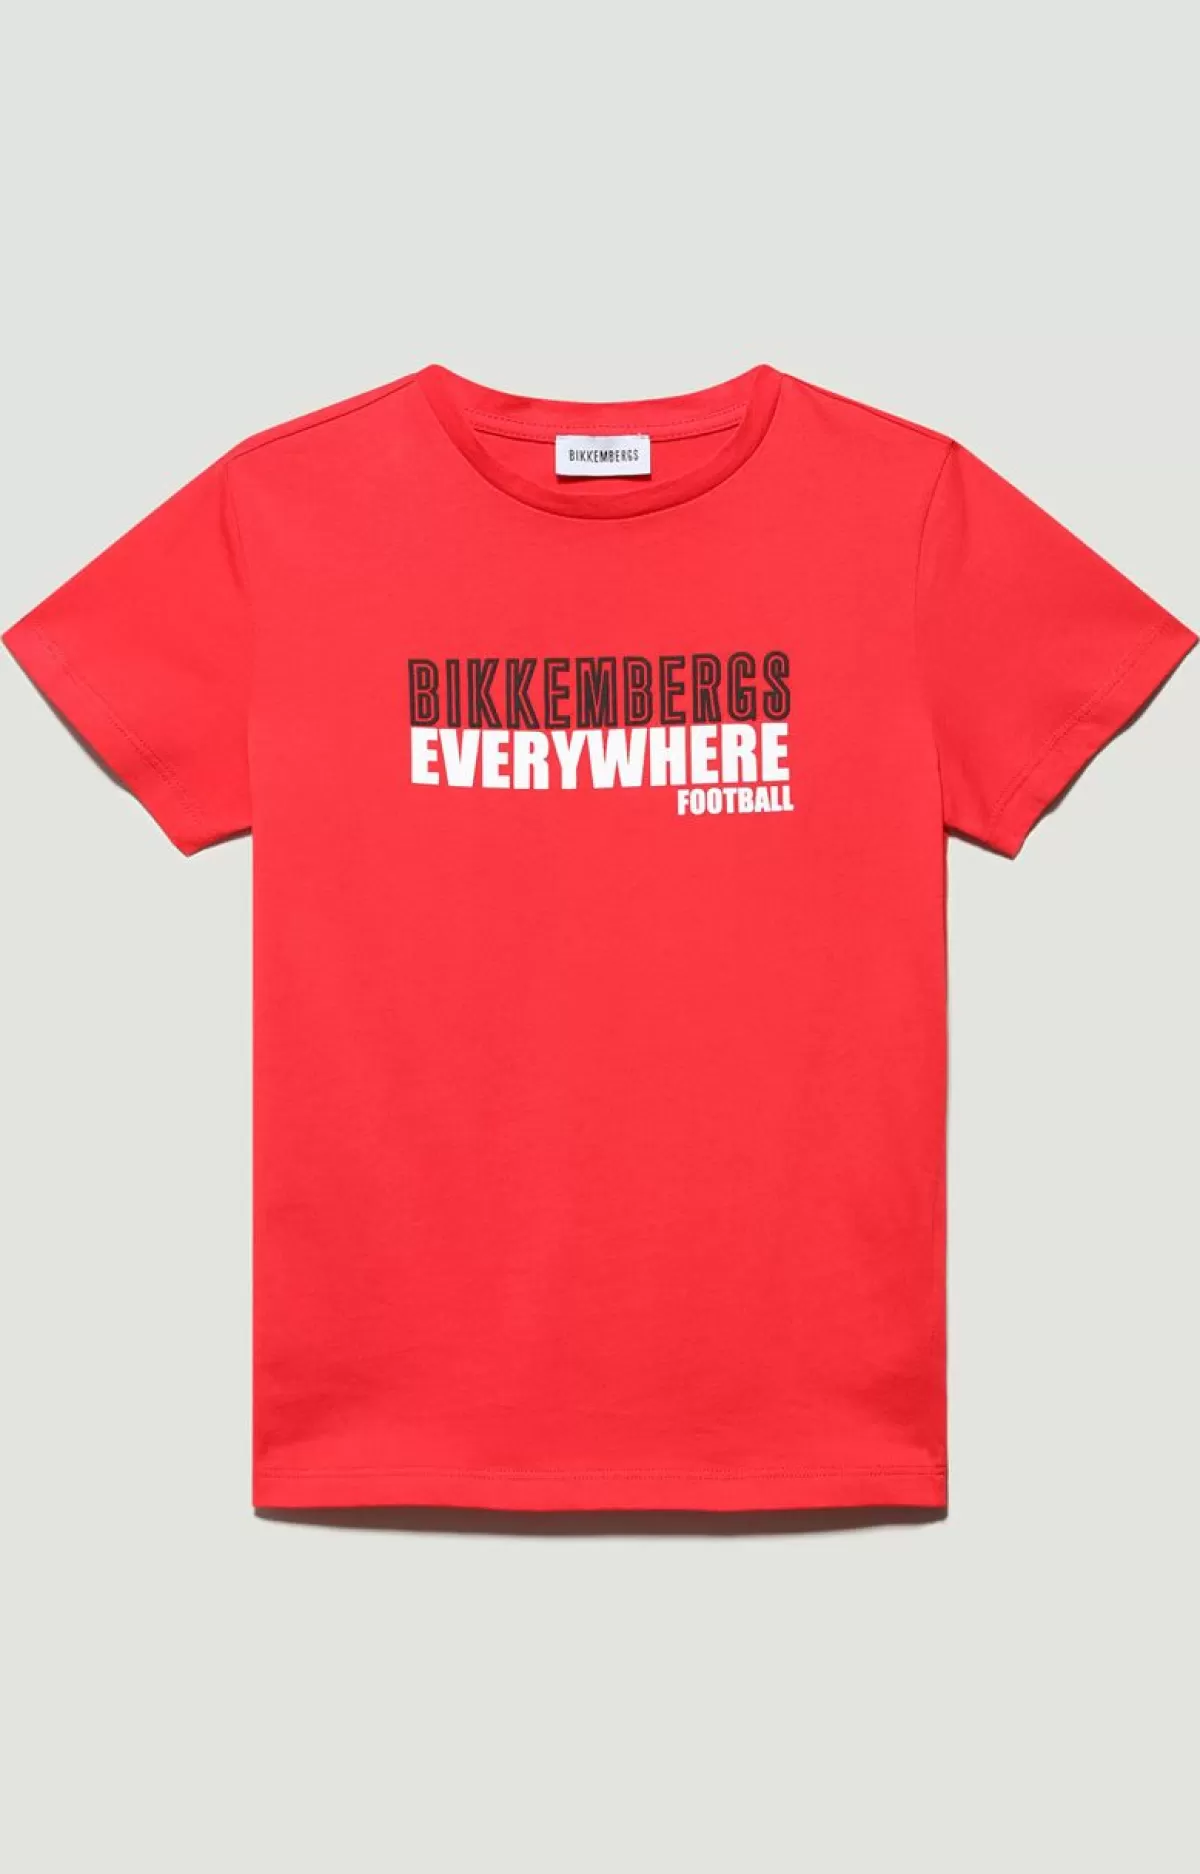 Bikkembergs Boys' Print T-Shirt Poppy Red Hot